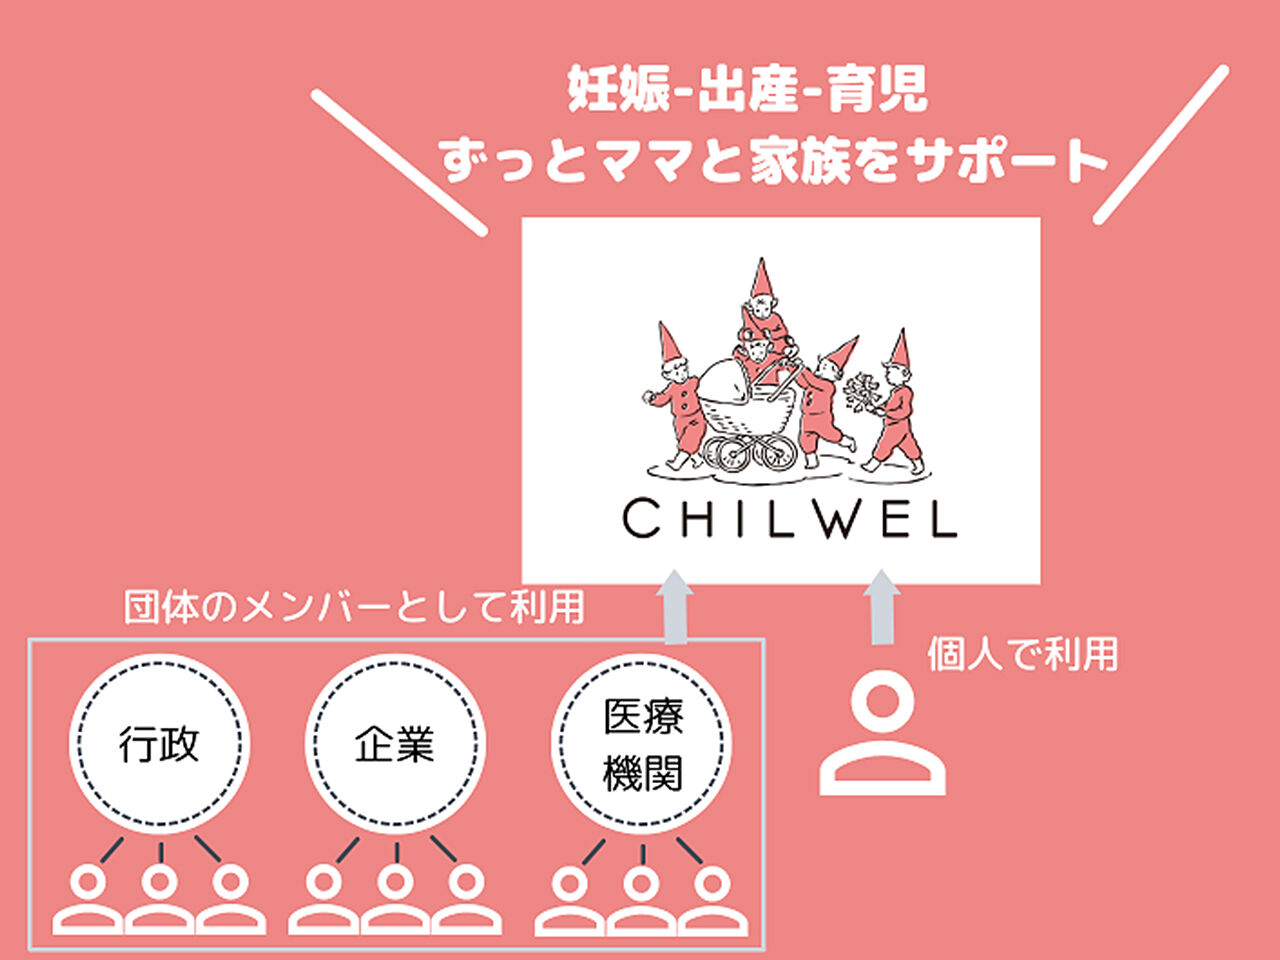 チルウェルのサポート体制のイラスト画像